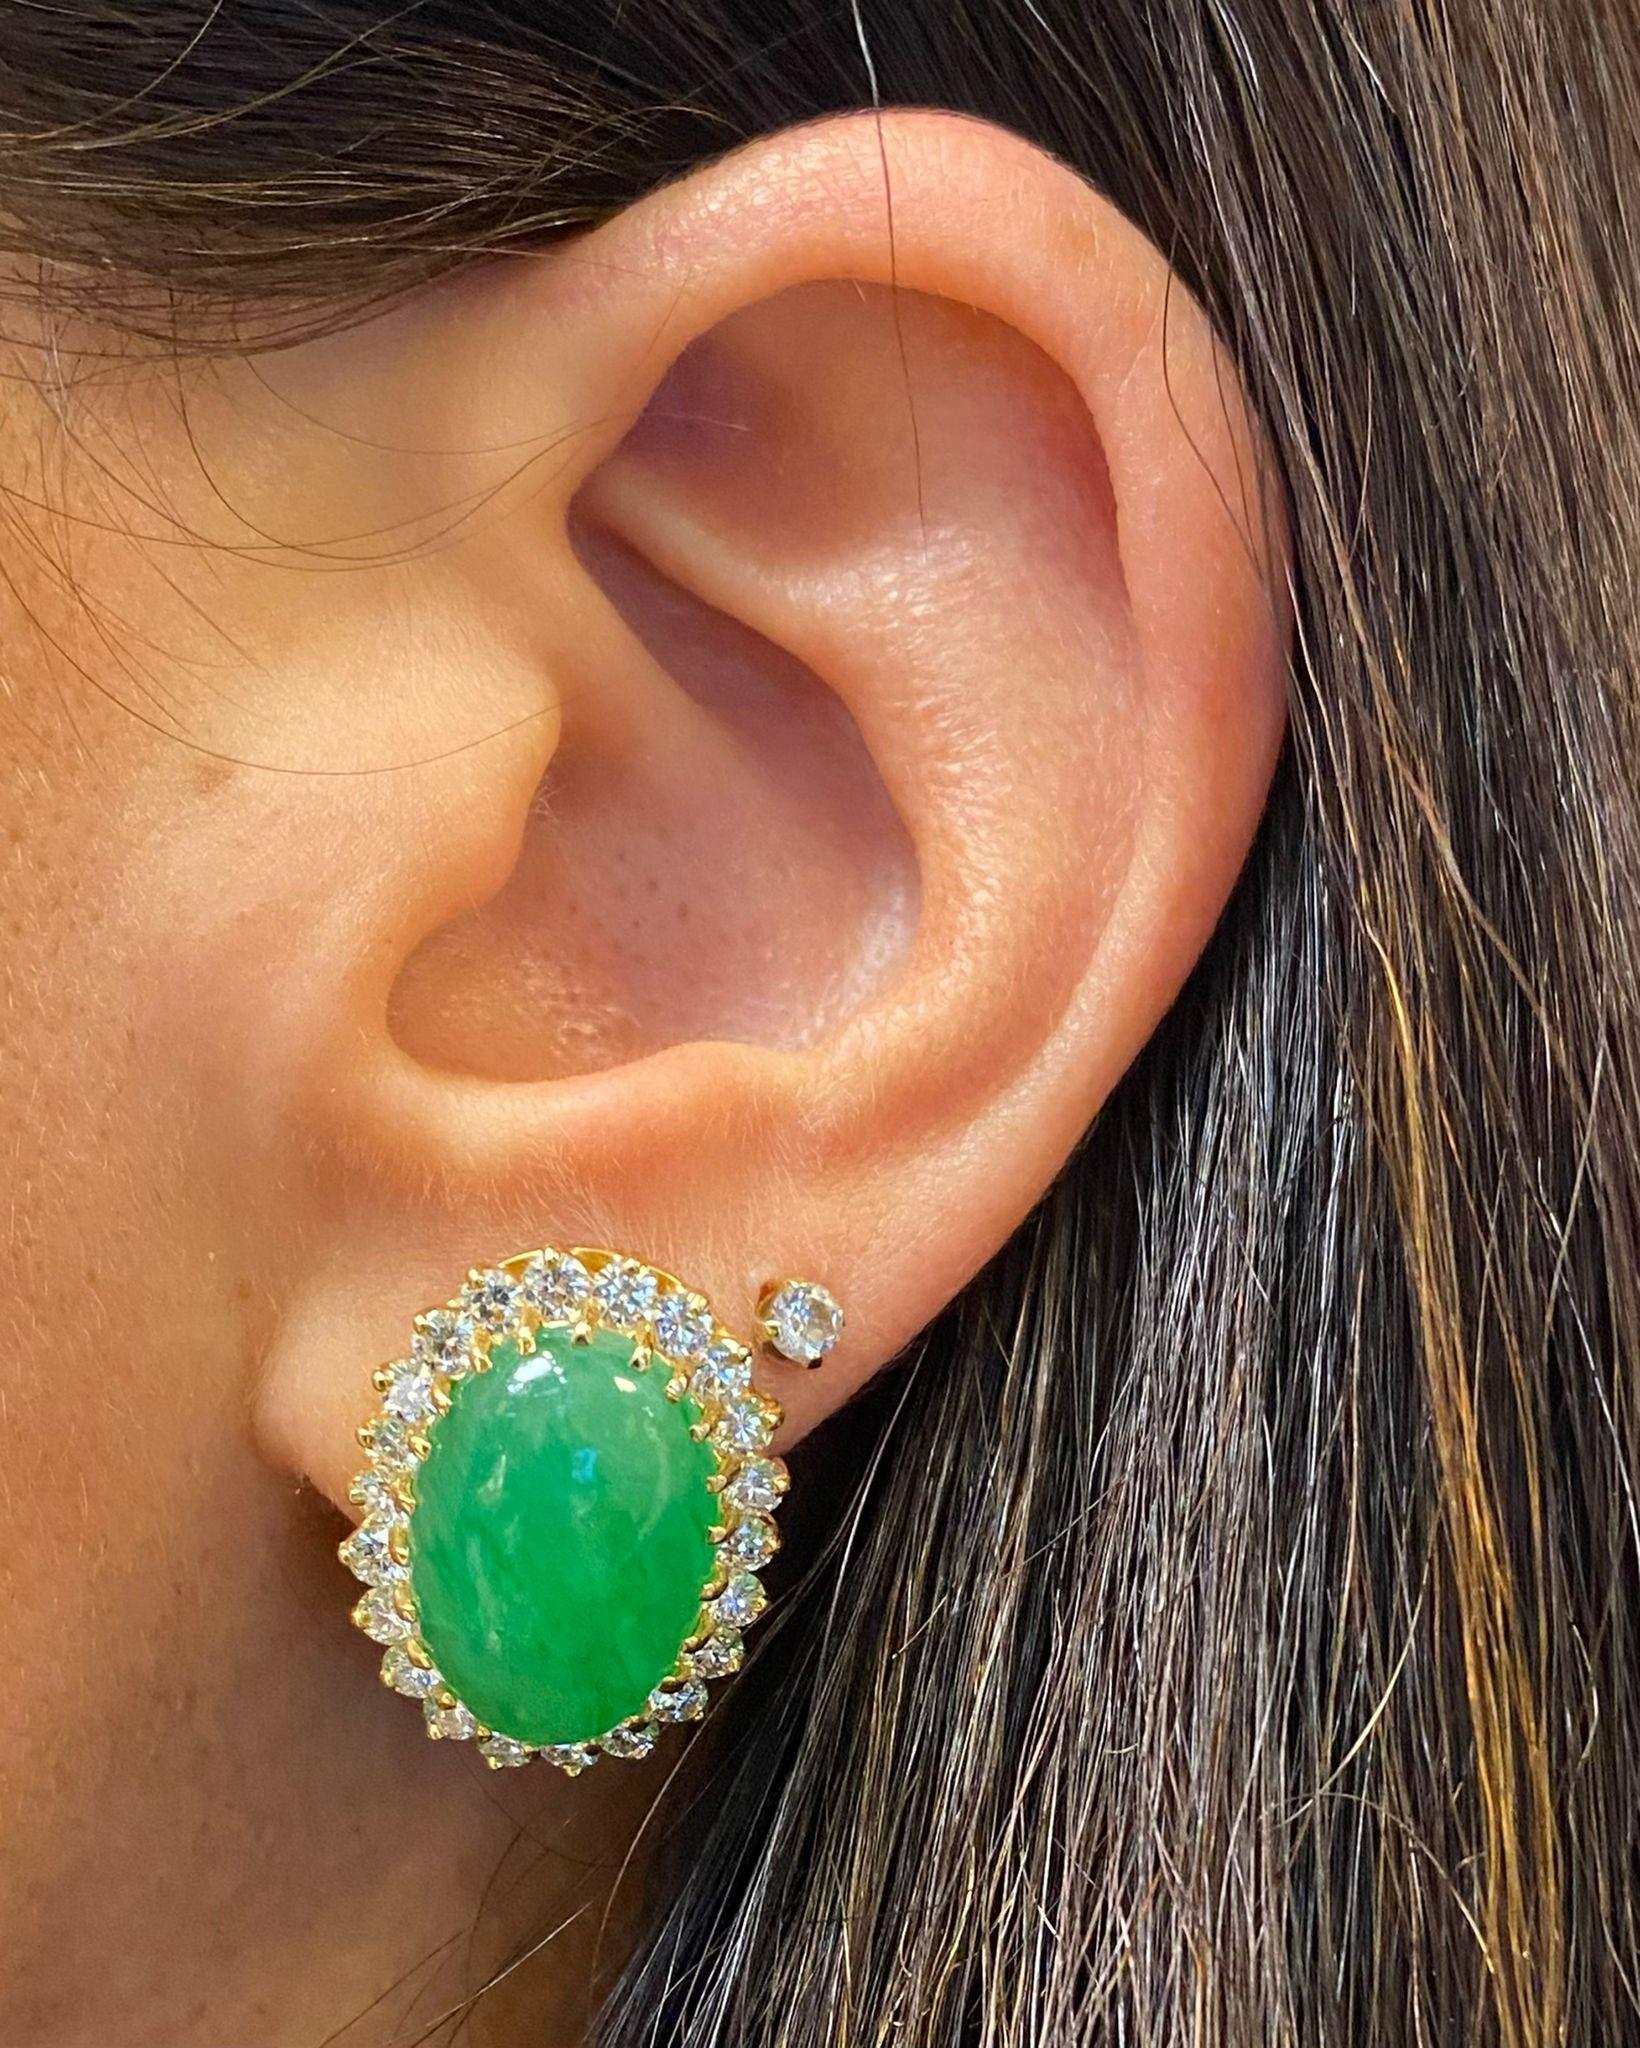 Boucles d'oreilles en jade et diamant

Paire de boucles d'oreilles en or jaune serties de 44 diamants ronds et de 2 jades cabochons

Poids total approximatif des diamants : 2,2 carats

Longueur : 0.88